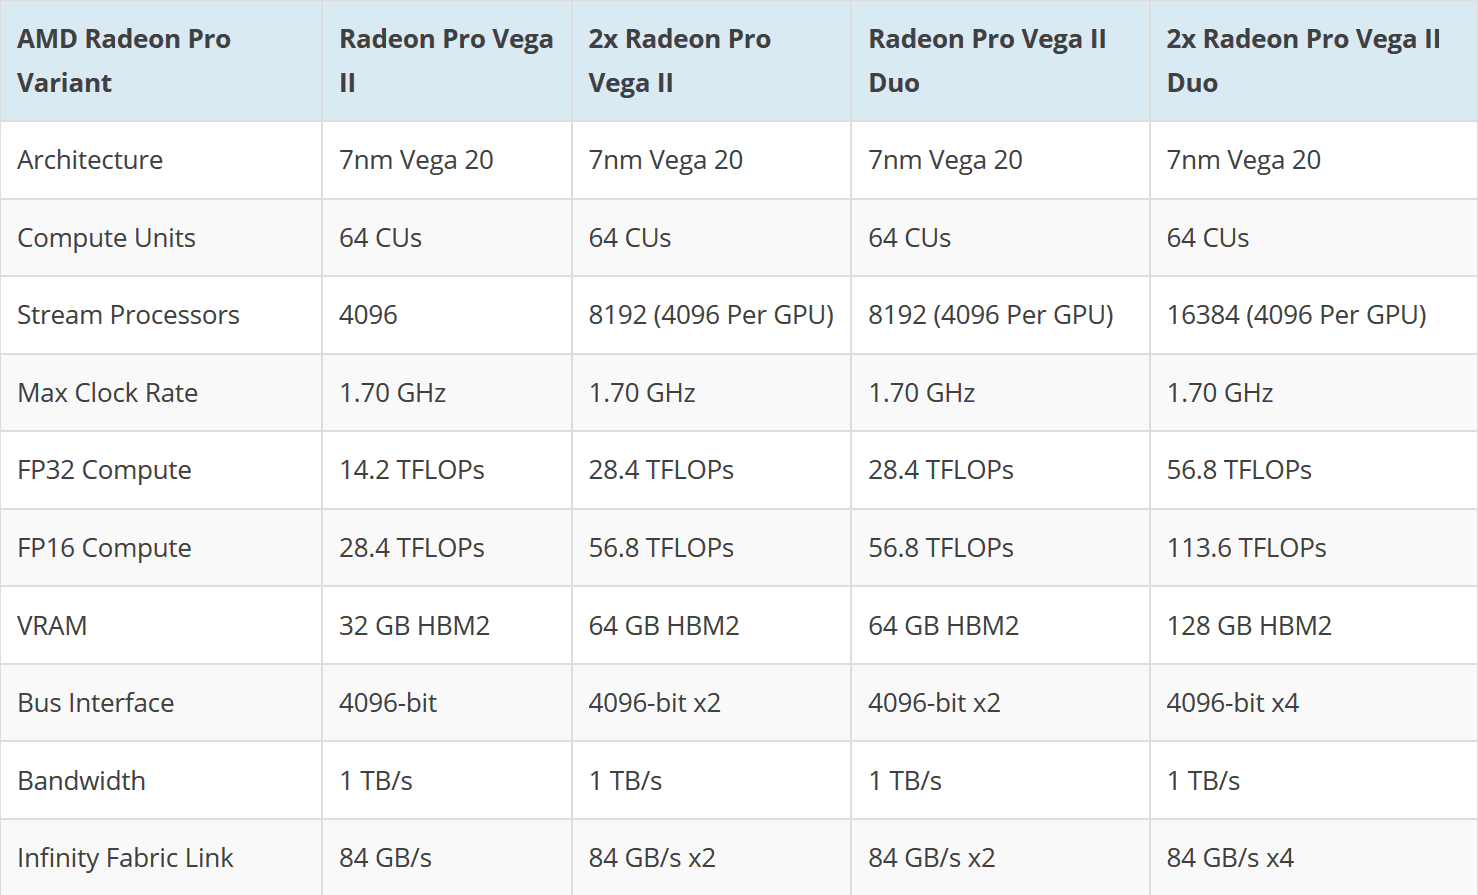 AMD Radeon Pro Vega II and Vega II Duo 